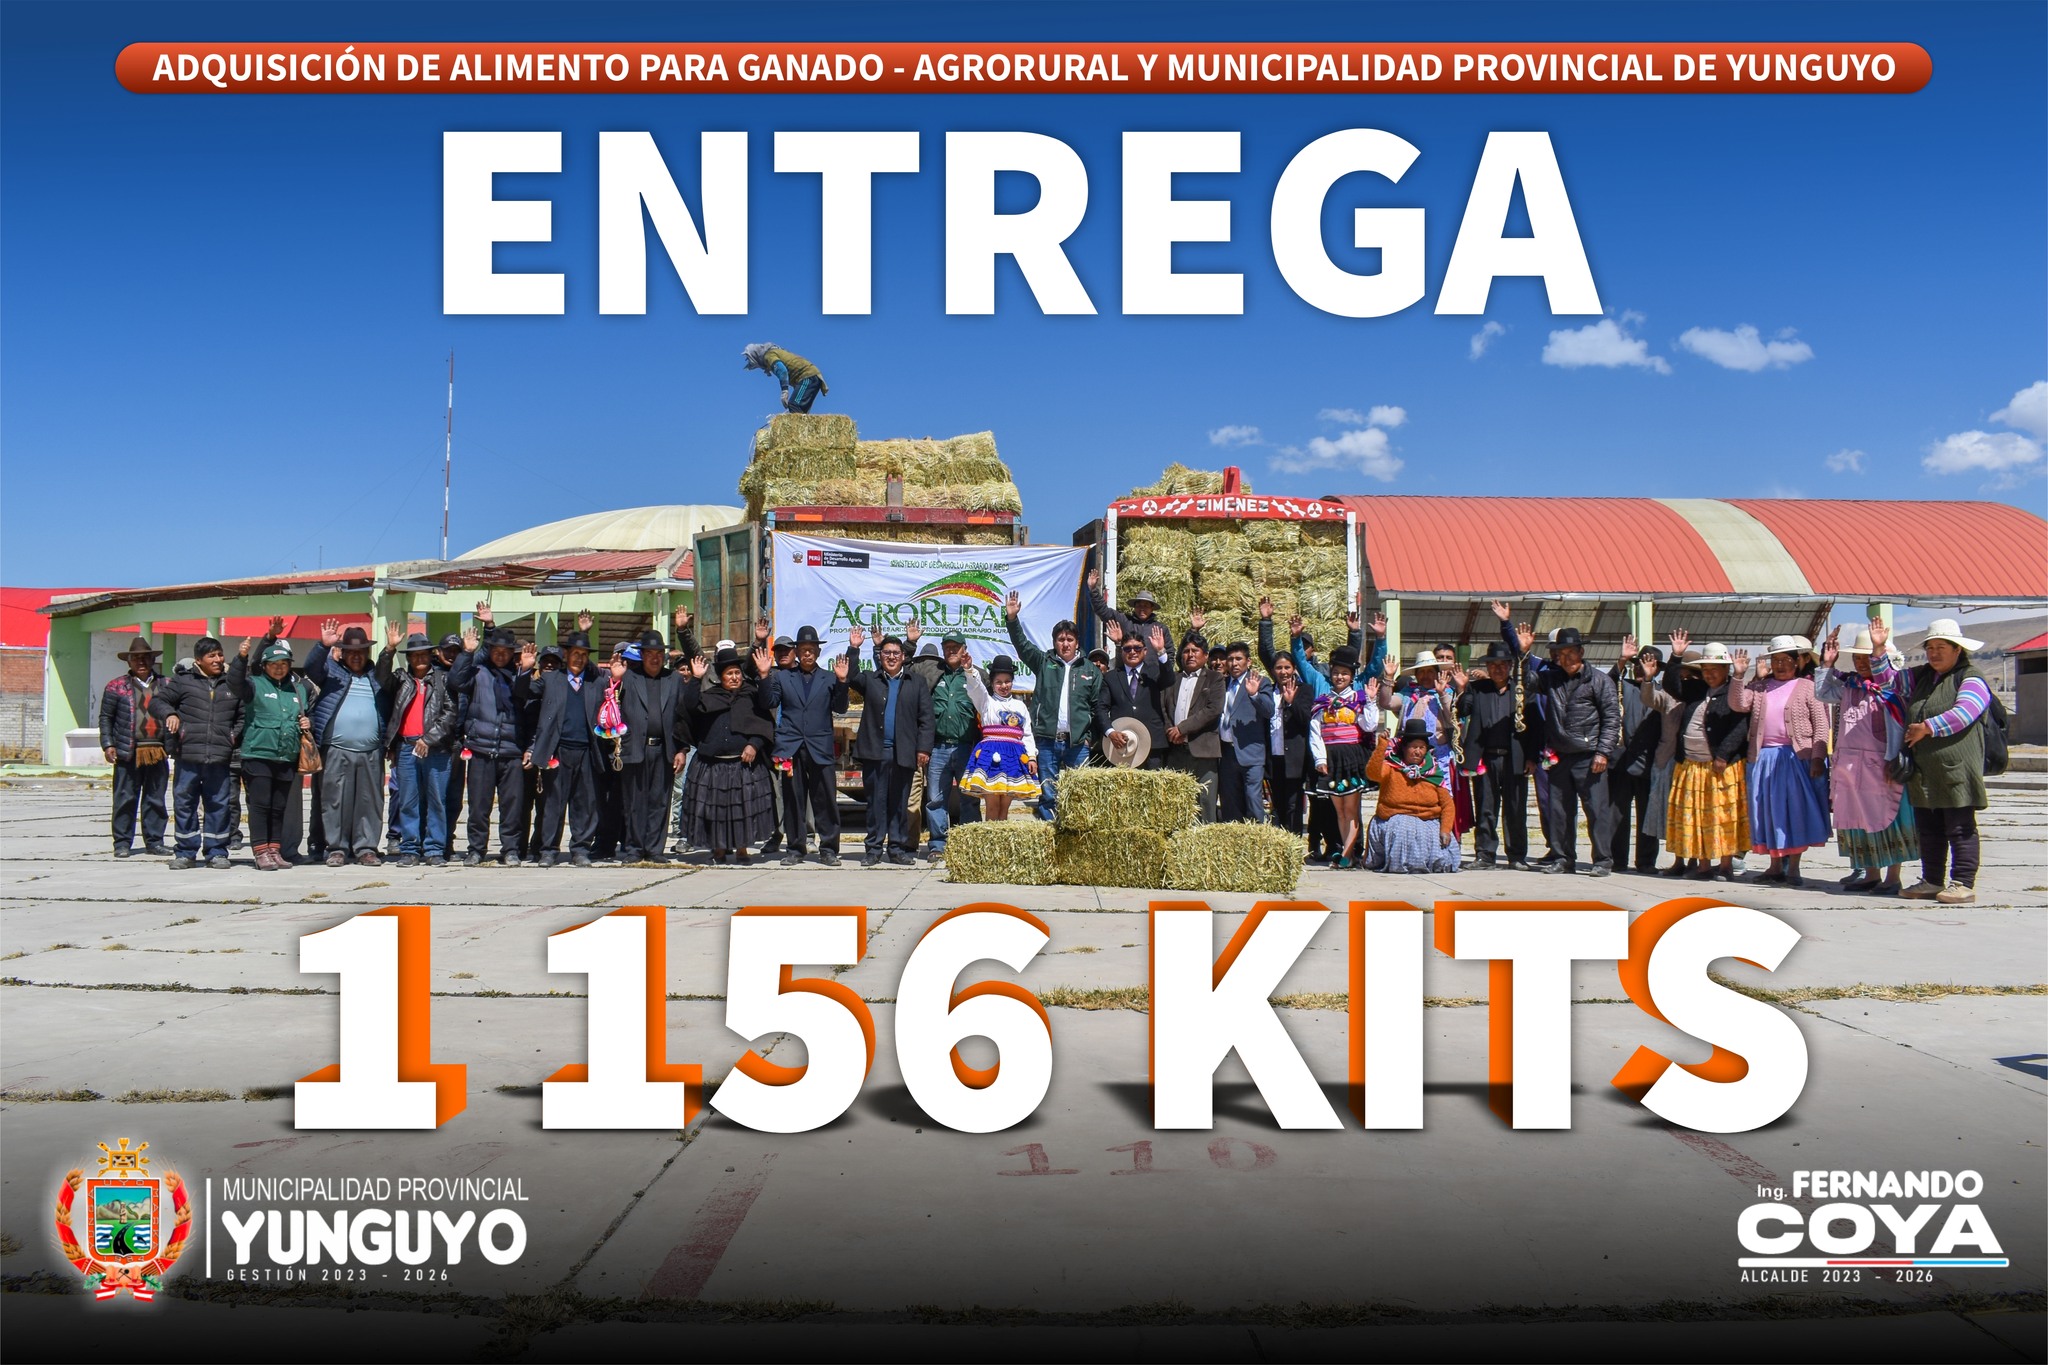 1156 Kits de Alimento Suplementario se Viene Distribuyendo a Nuestra Poblacion Agropecuaria del Distrito de Yunguyo.